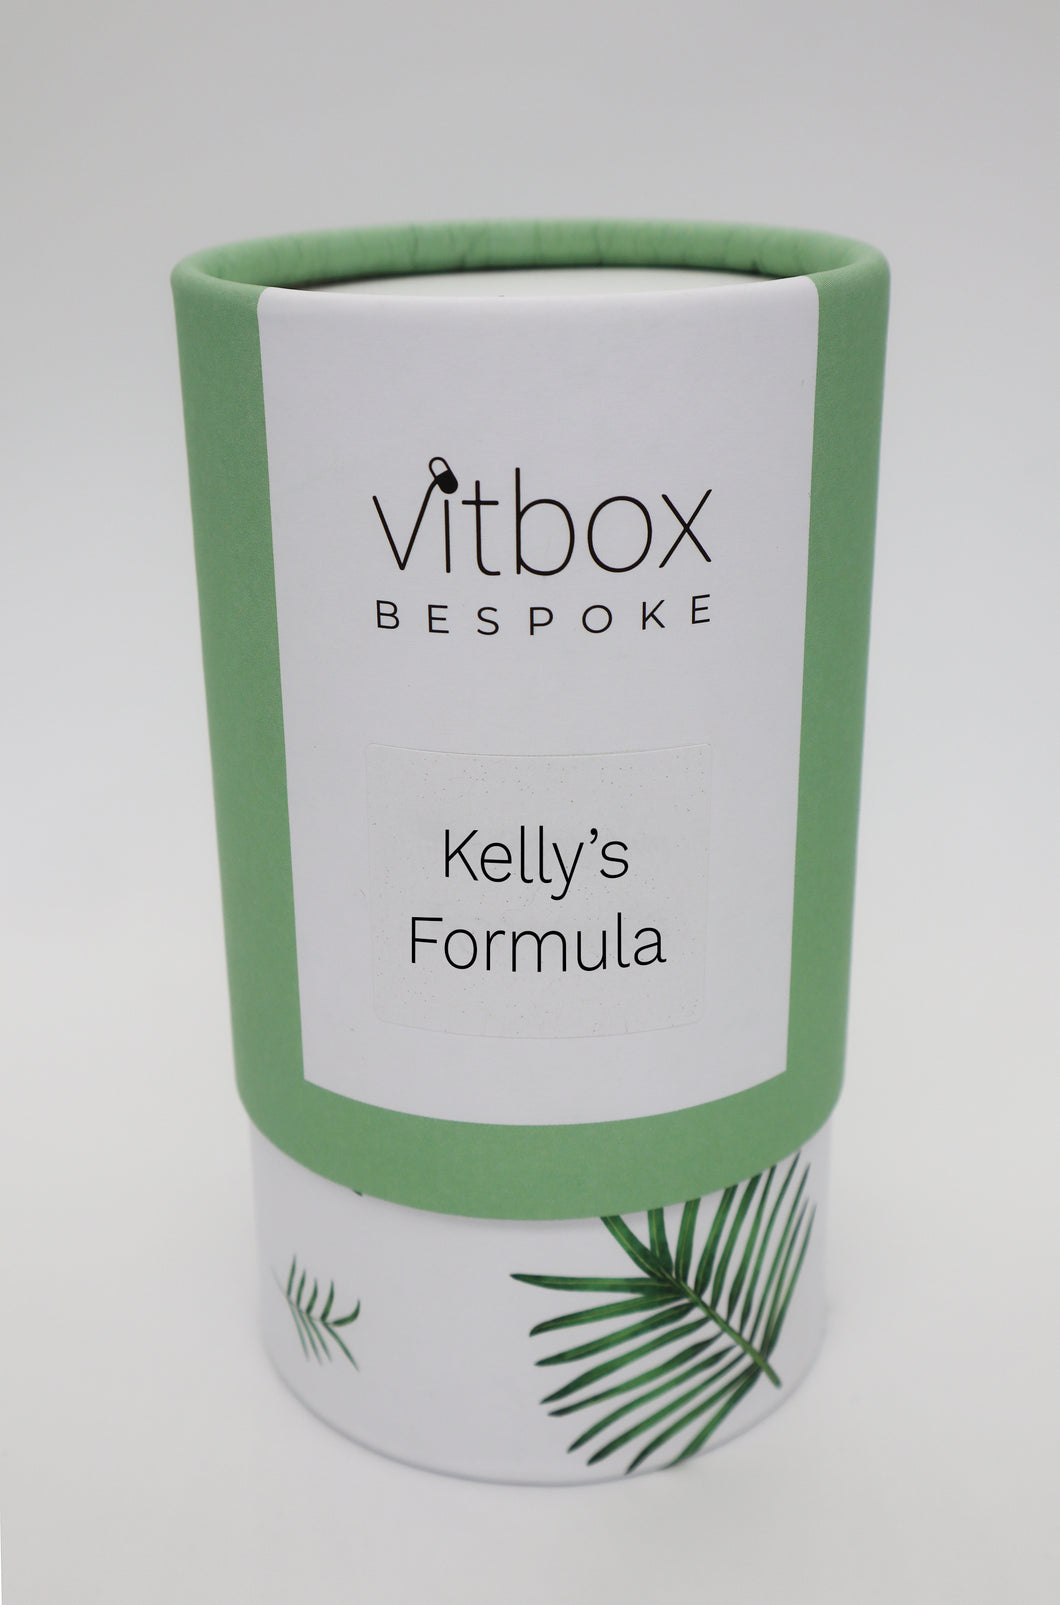 Kelly's Vitbox Bespoke